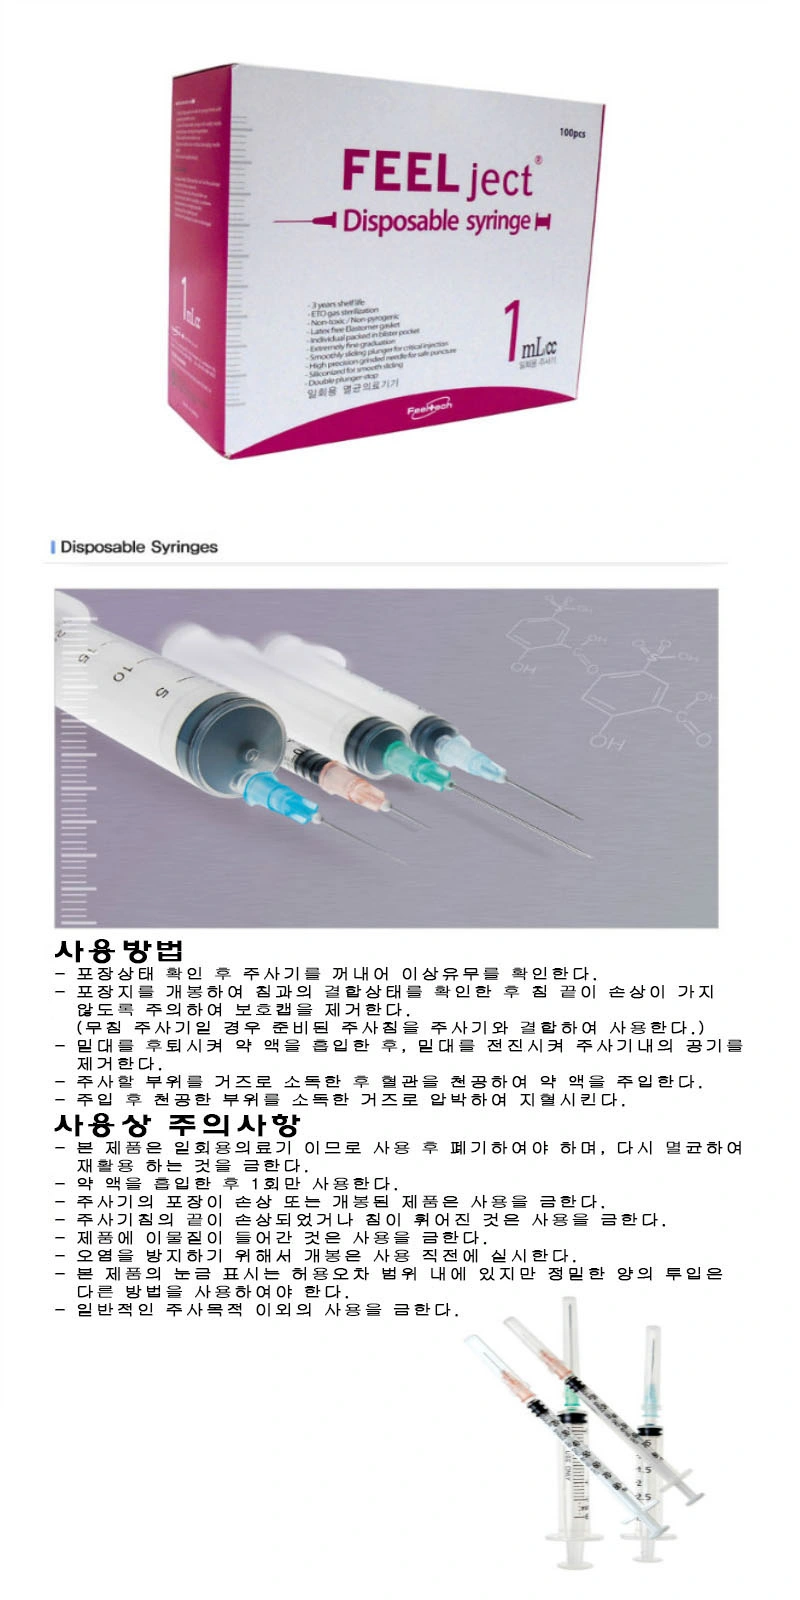 Wholesale Disposable 1ml Syringe with Needle 26g 27g Vaccine Syringe